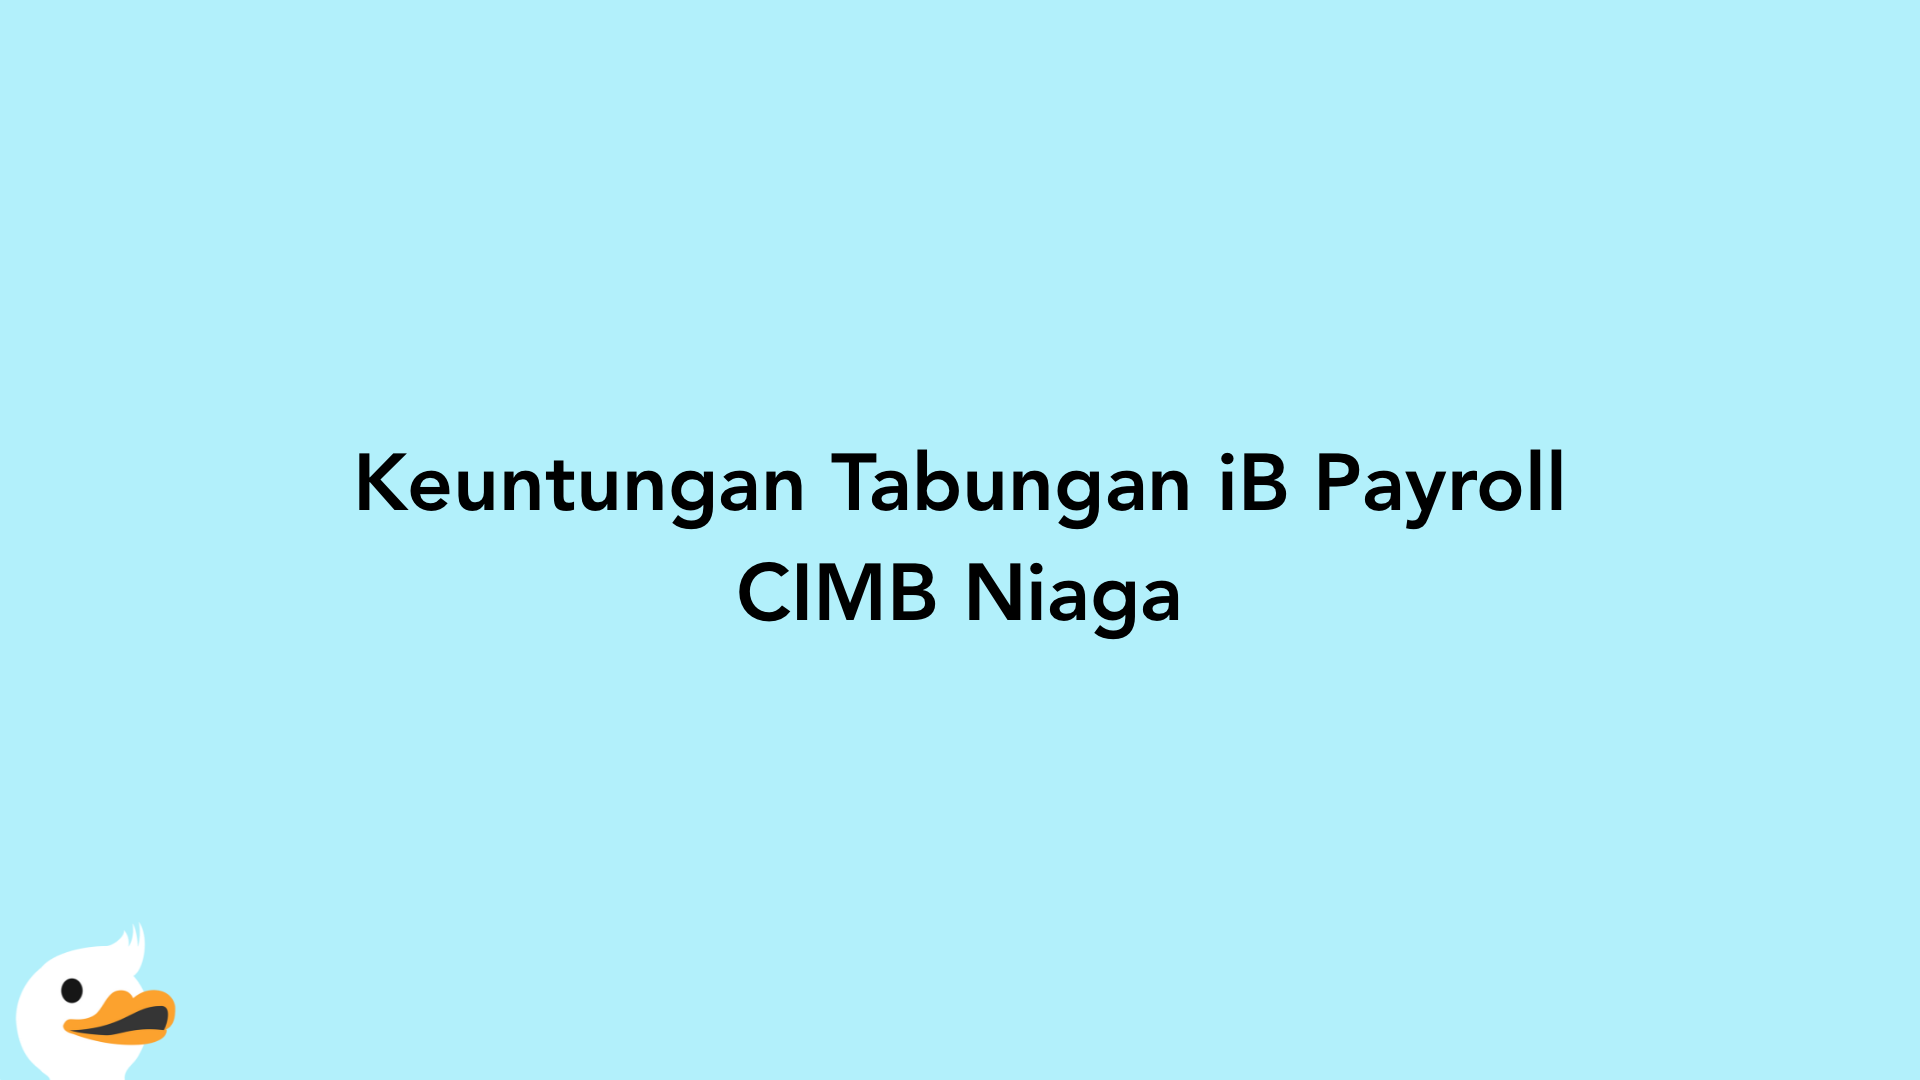 Keuntungan Tabungan iB Payroll CIMB Niaga